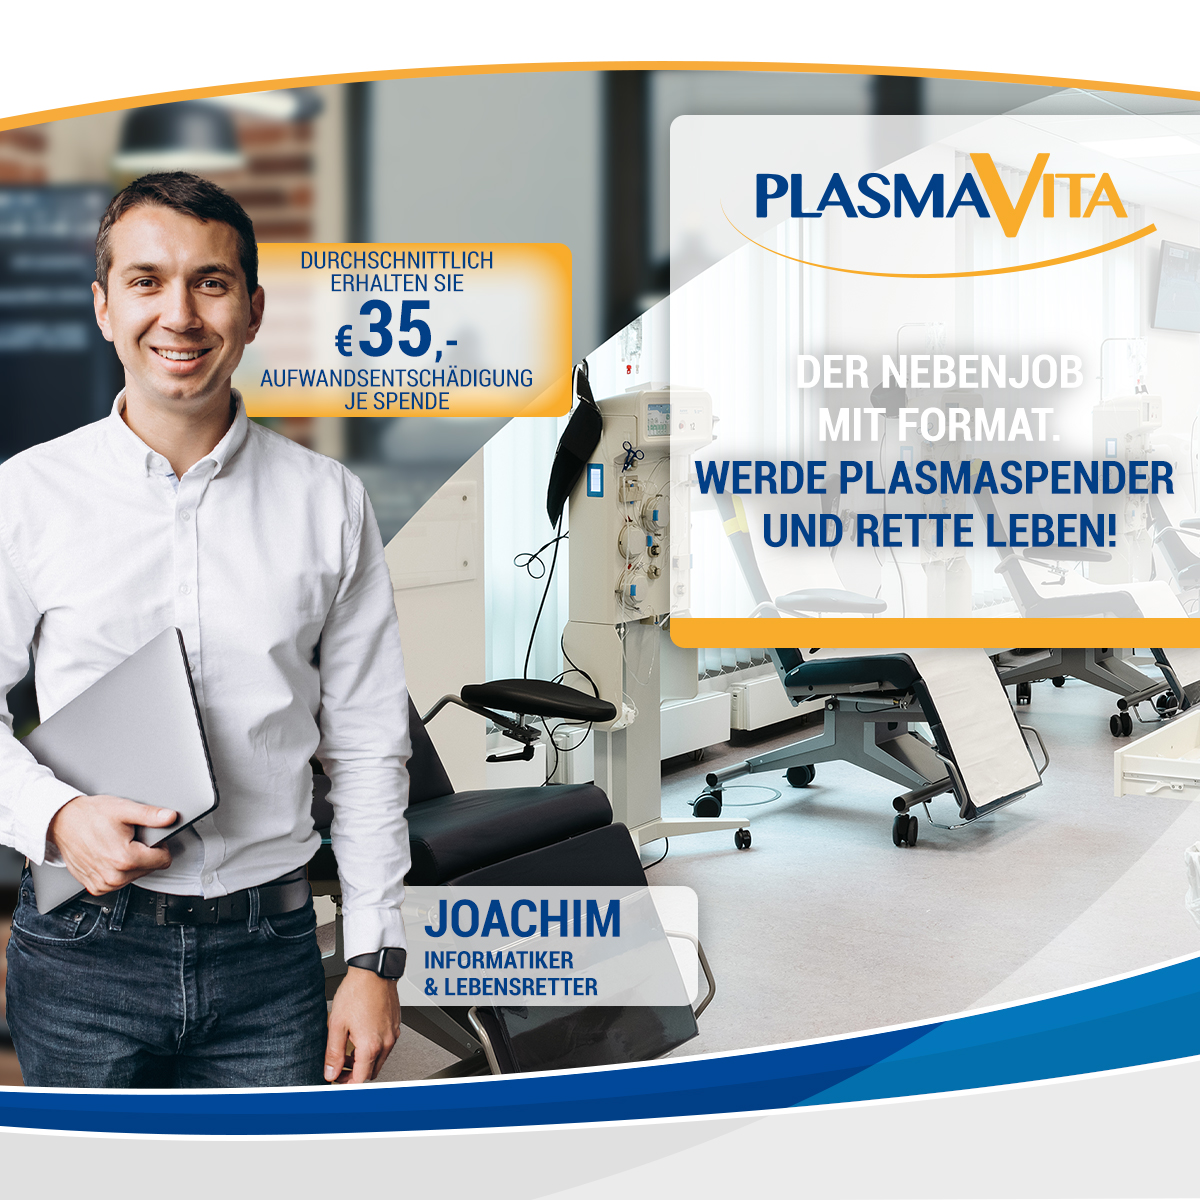 PlasmaVita Healthcare II GmbH – Meine Art zu helfen!